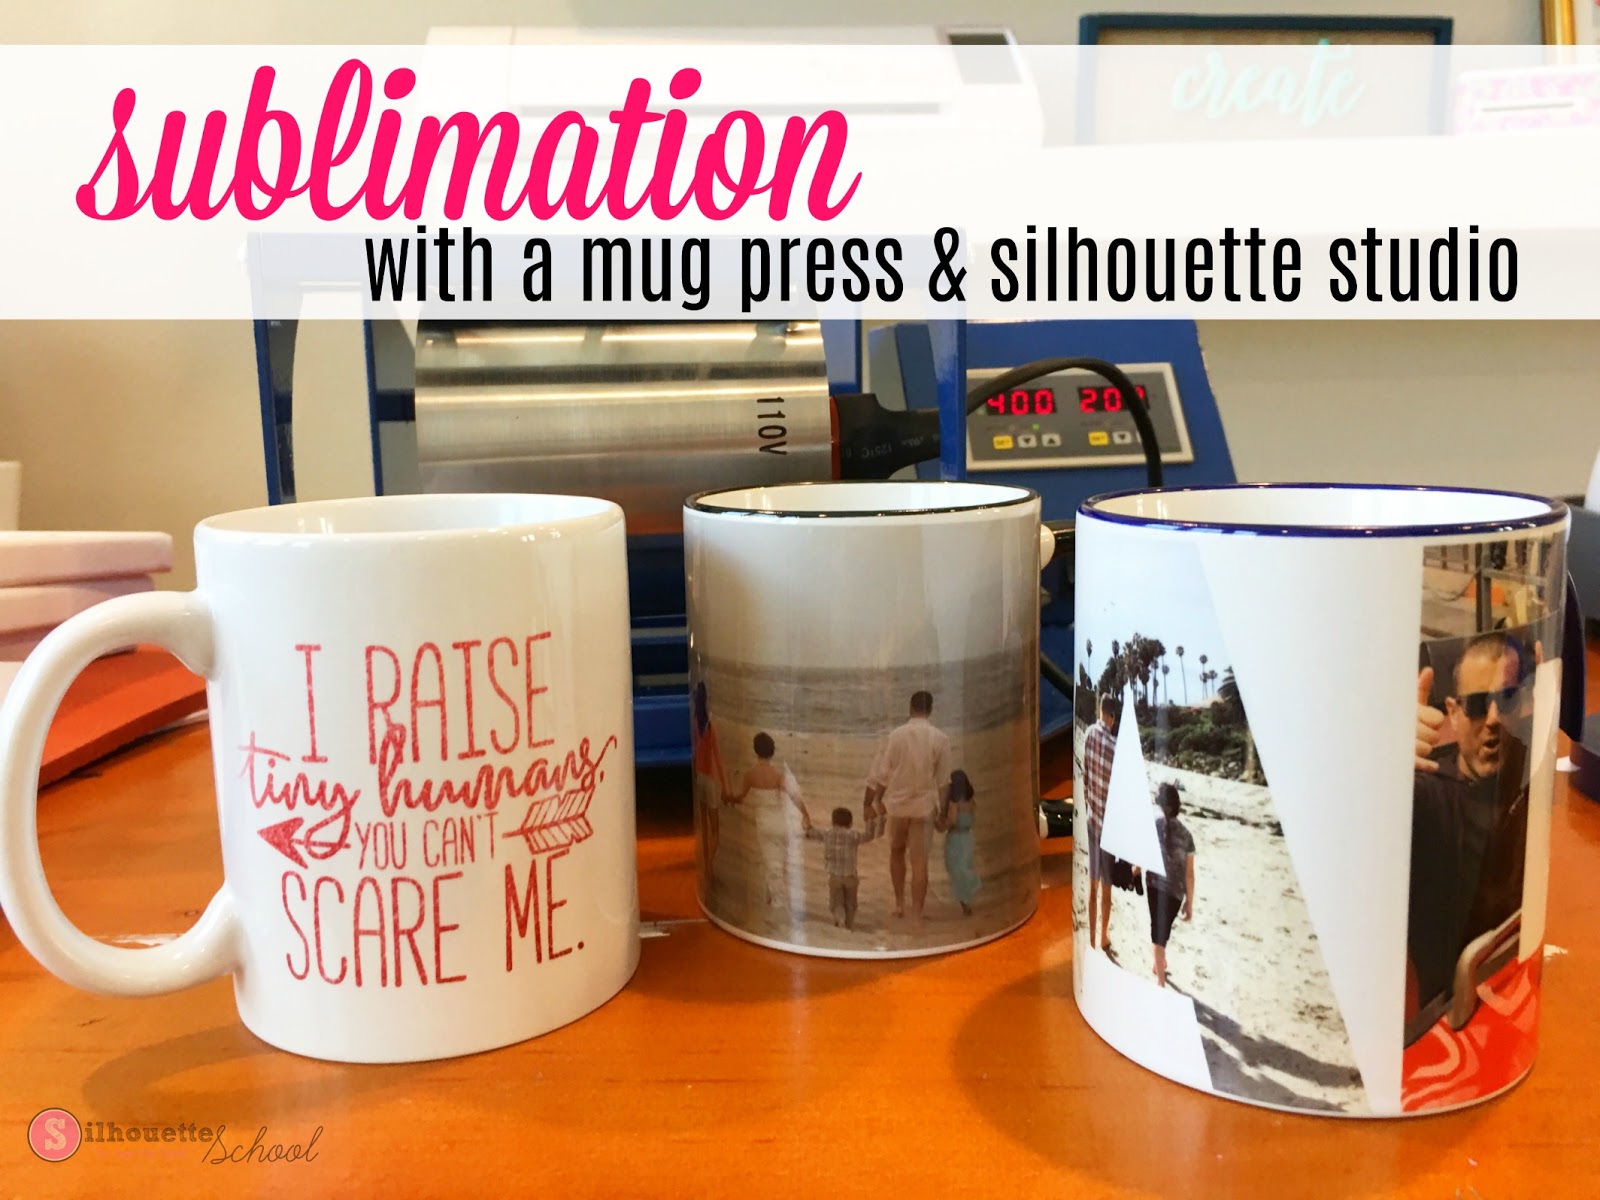 How to Sublimate onto Ceramic Mugs Using Silhouette Studio (Free